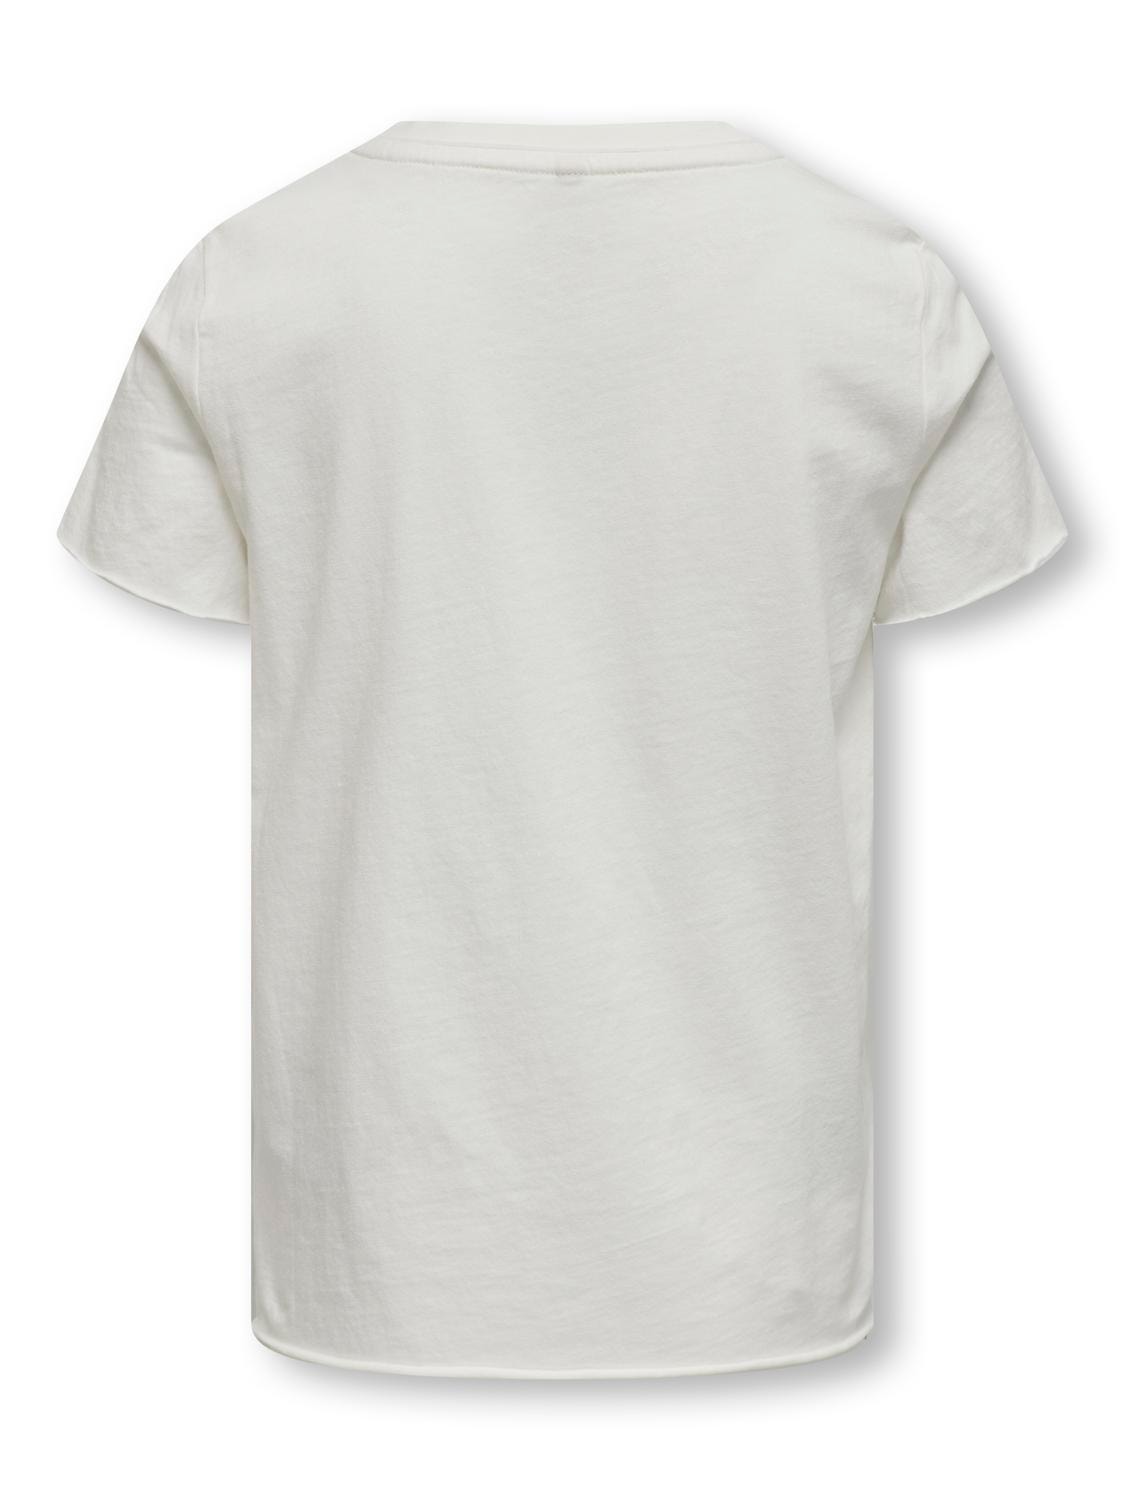 ONLY O-neck t-shirt -Cloud Dancer - 15312802